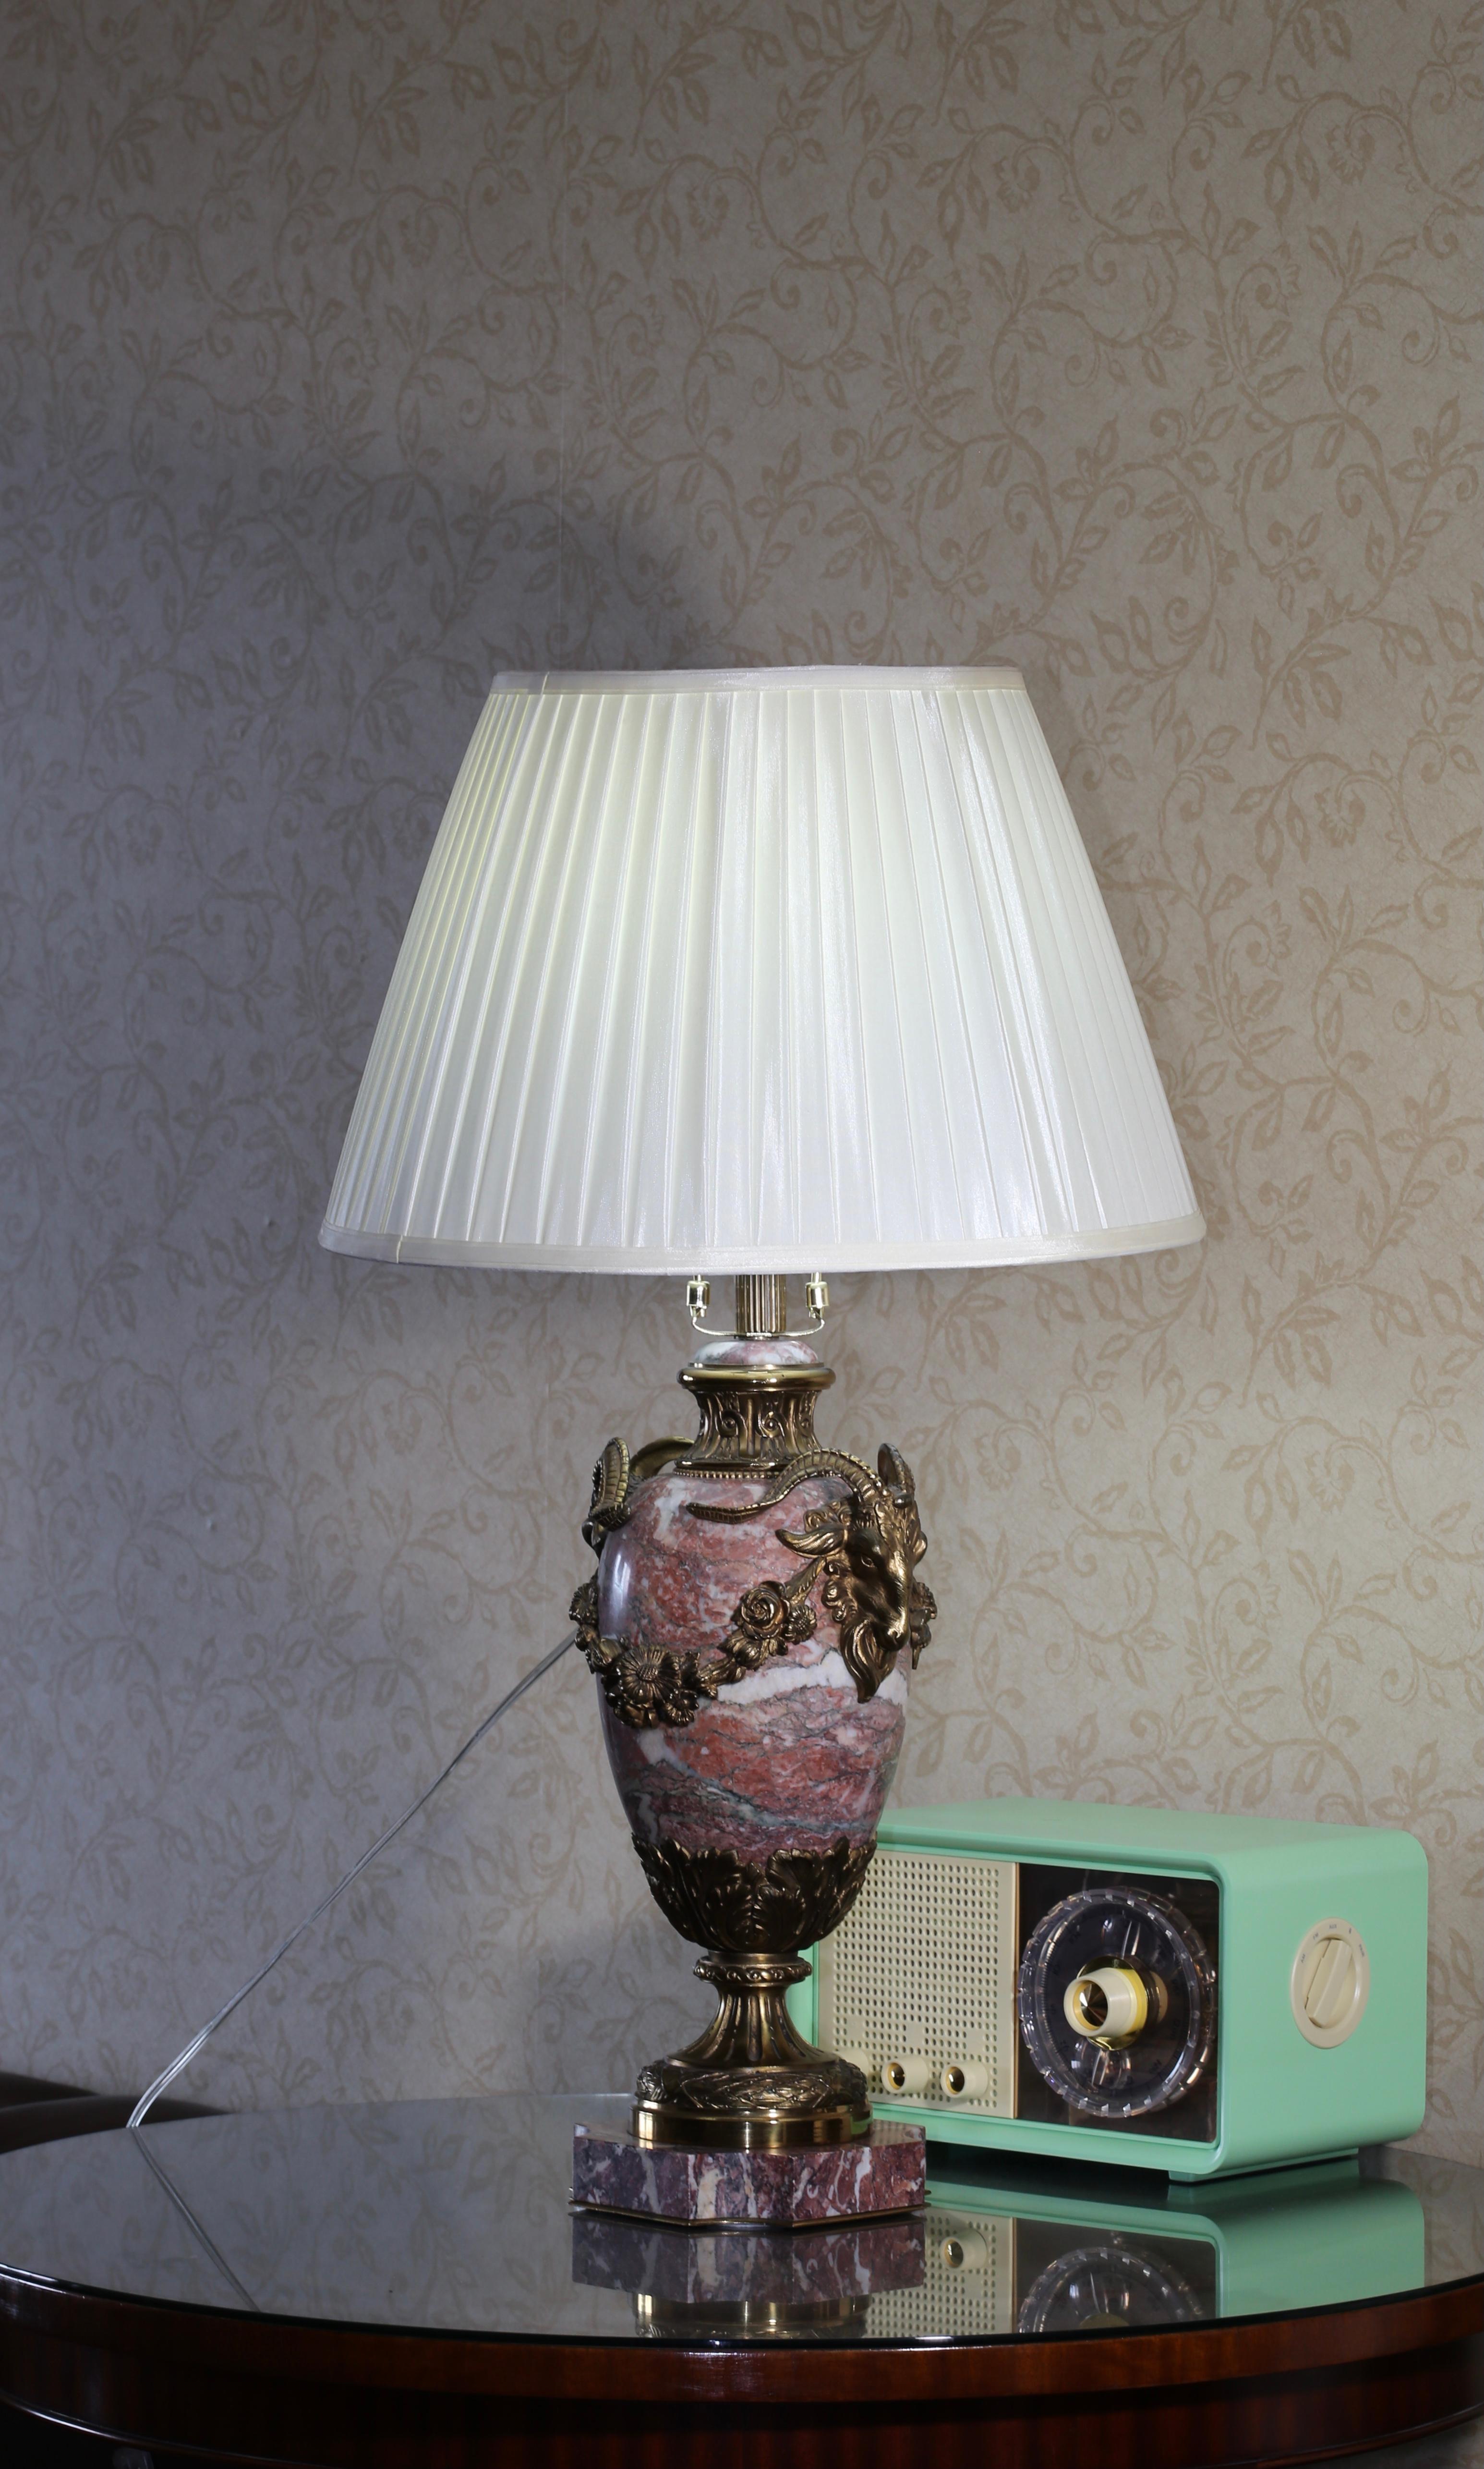 20ième siècle Lampe de table en bronze doré début 20ème siècle - Christie's 2011 Auction en vente